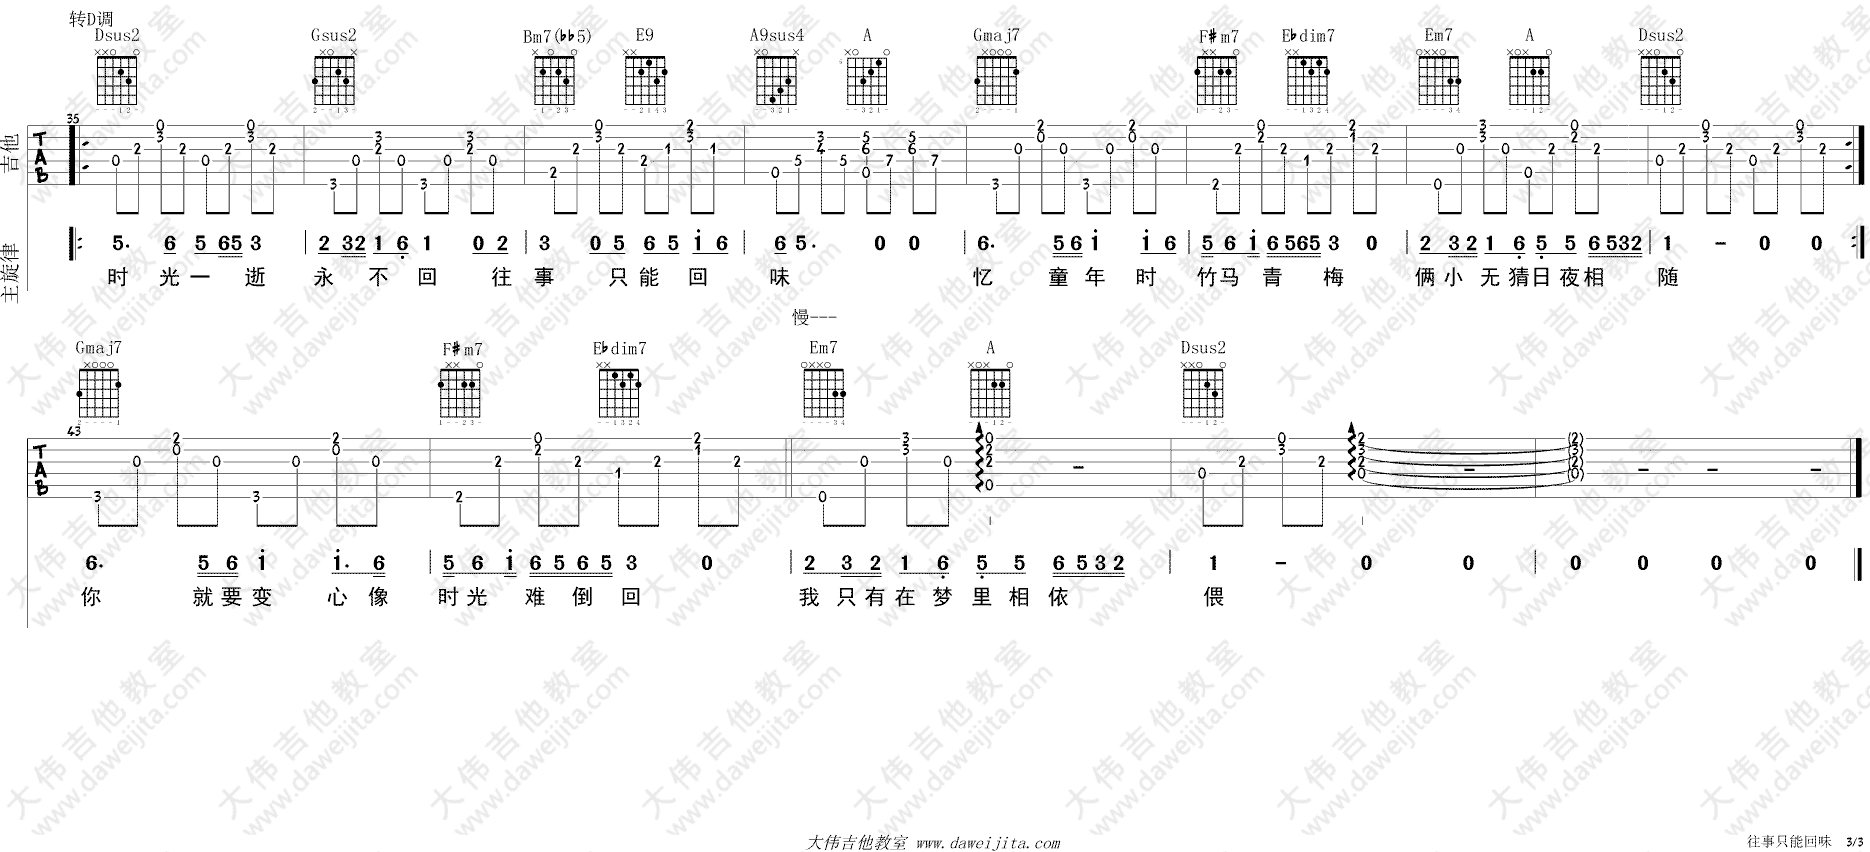 冬 ukulele四 重制版 好妹妹乐队 歌谱 简谱,五线谱